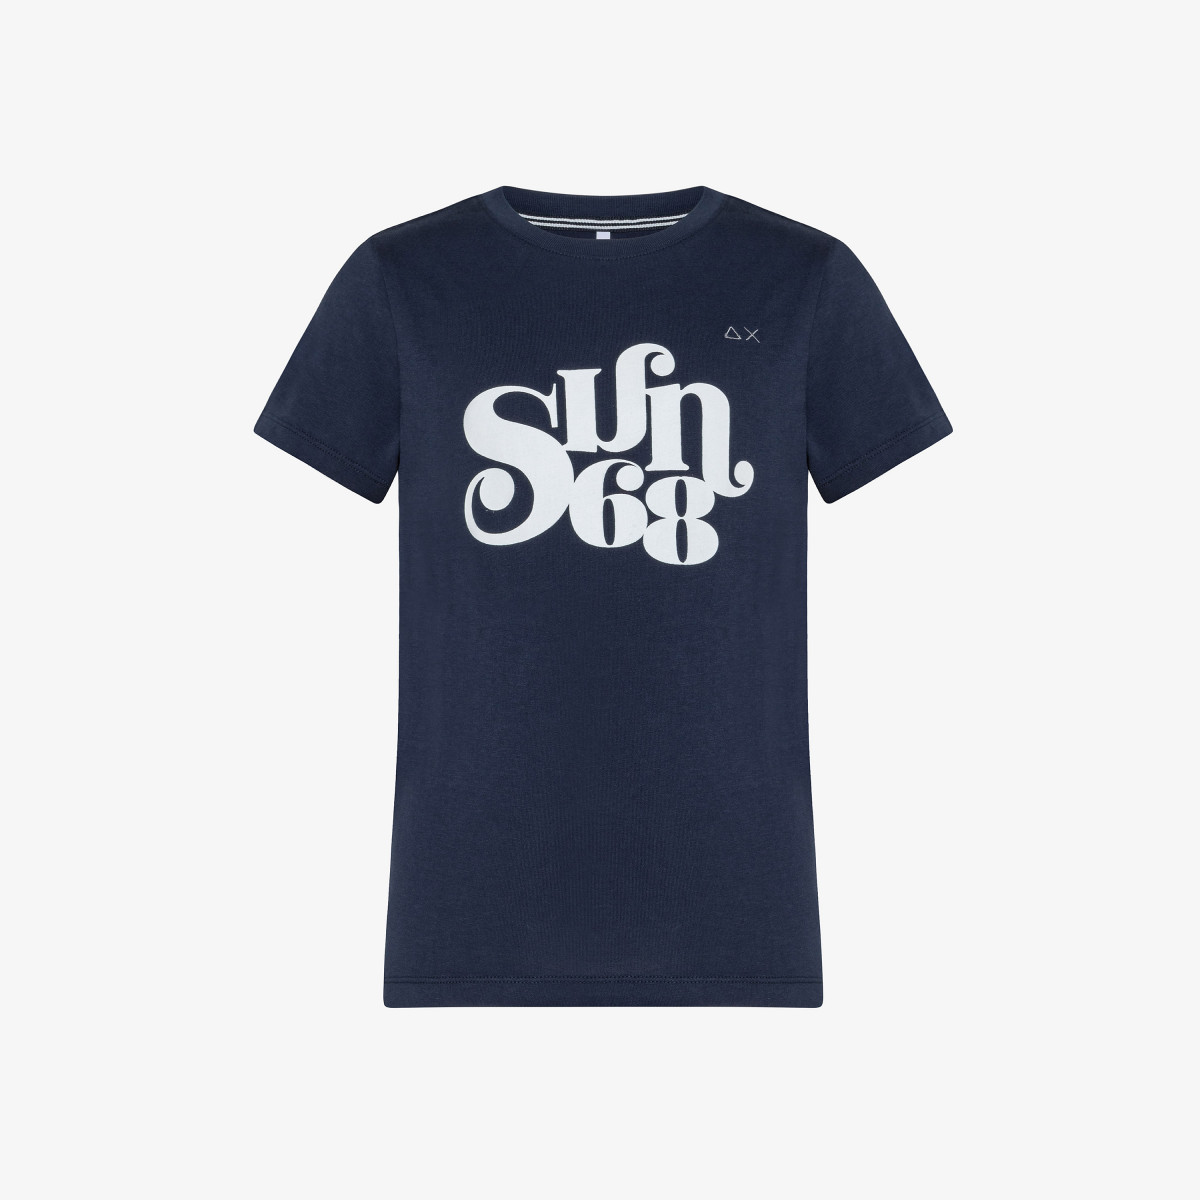 BOY'S T-SHIRT SUN68 TYPE LOGO NAVY BLUE